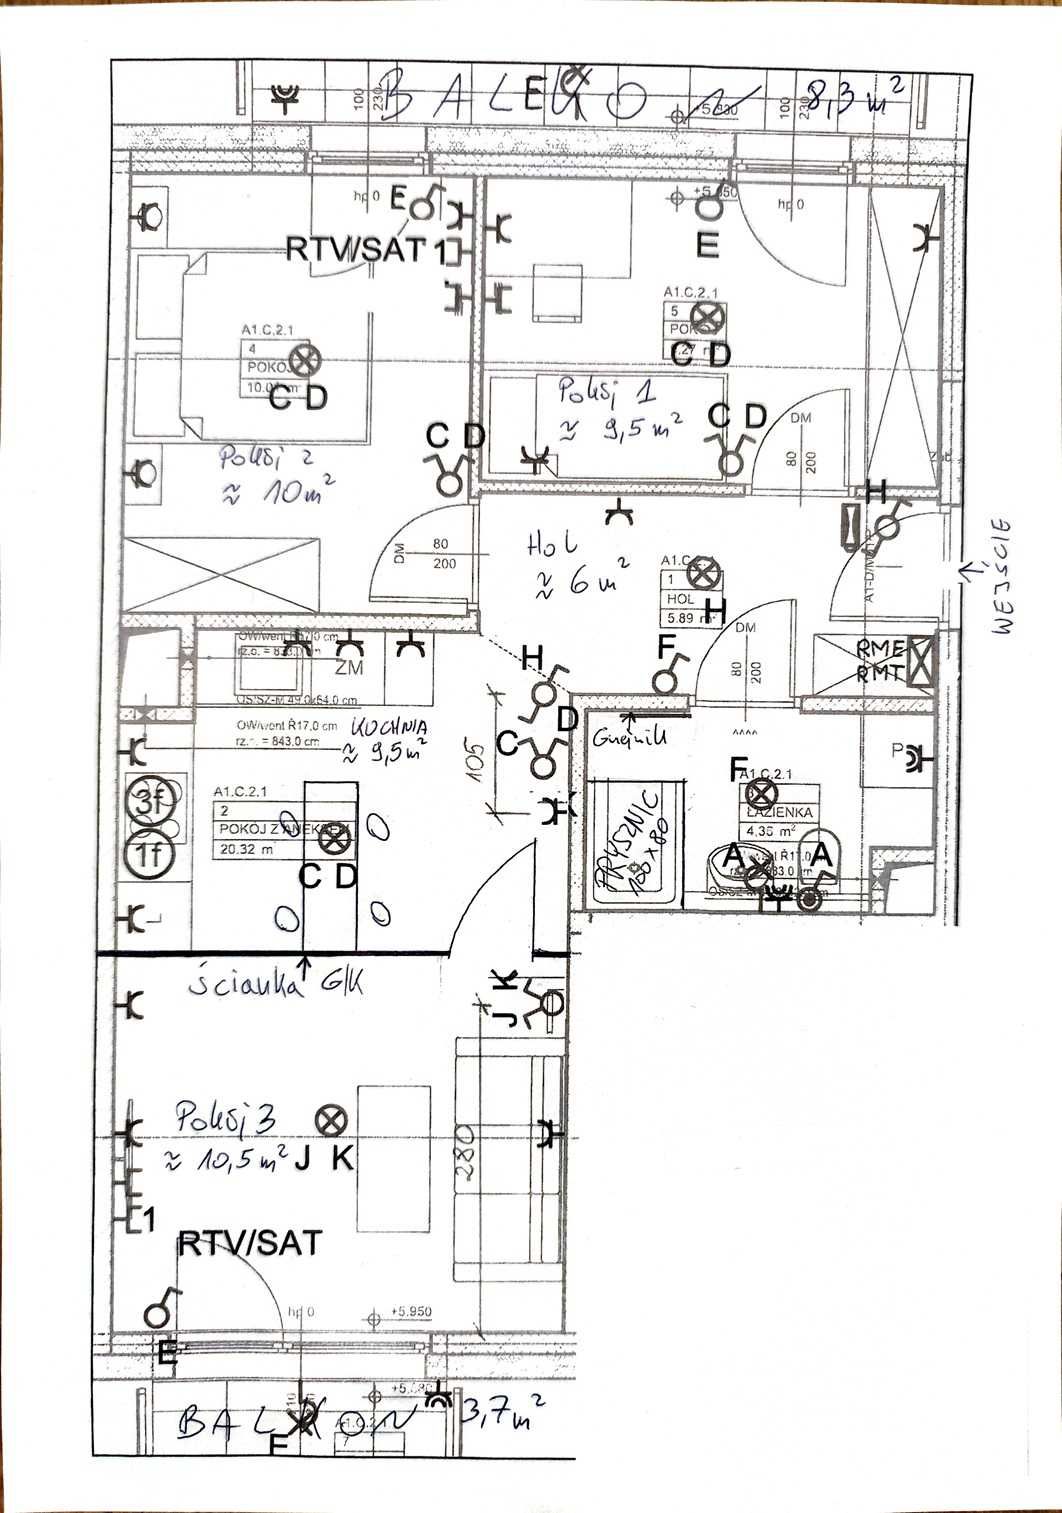 Powierzchnia biurowa, 3-pok, 51 m2/ Marcelin/ nowe budownictwo/parking